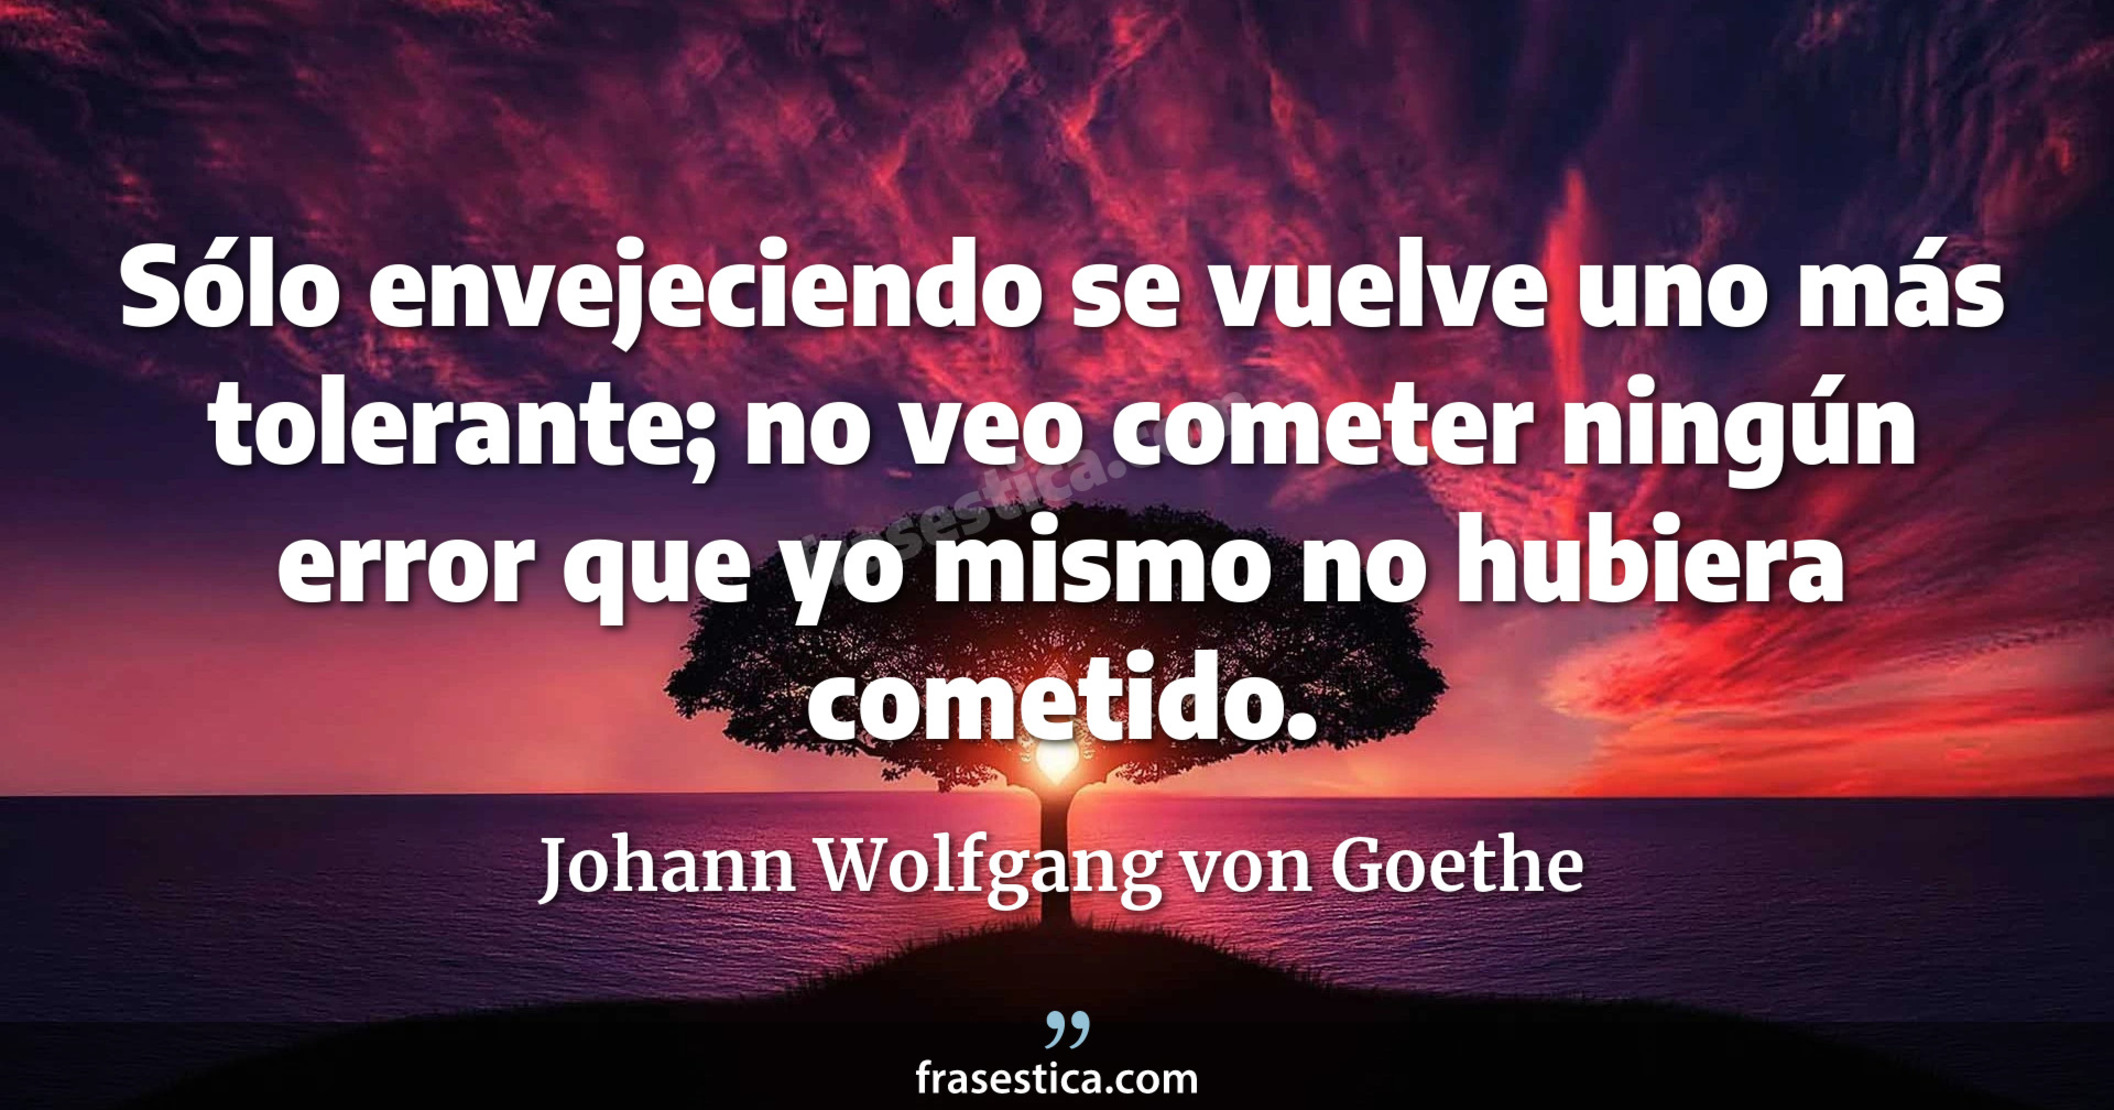 Sólo envejeciendo se vuelve uno más tolerante; no veo cometer ningún error que yo mismo no hubiera cometido. - Johann Wolfgang von Goethe